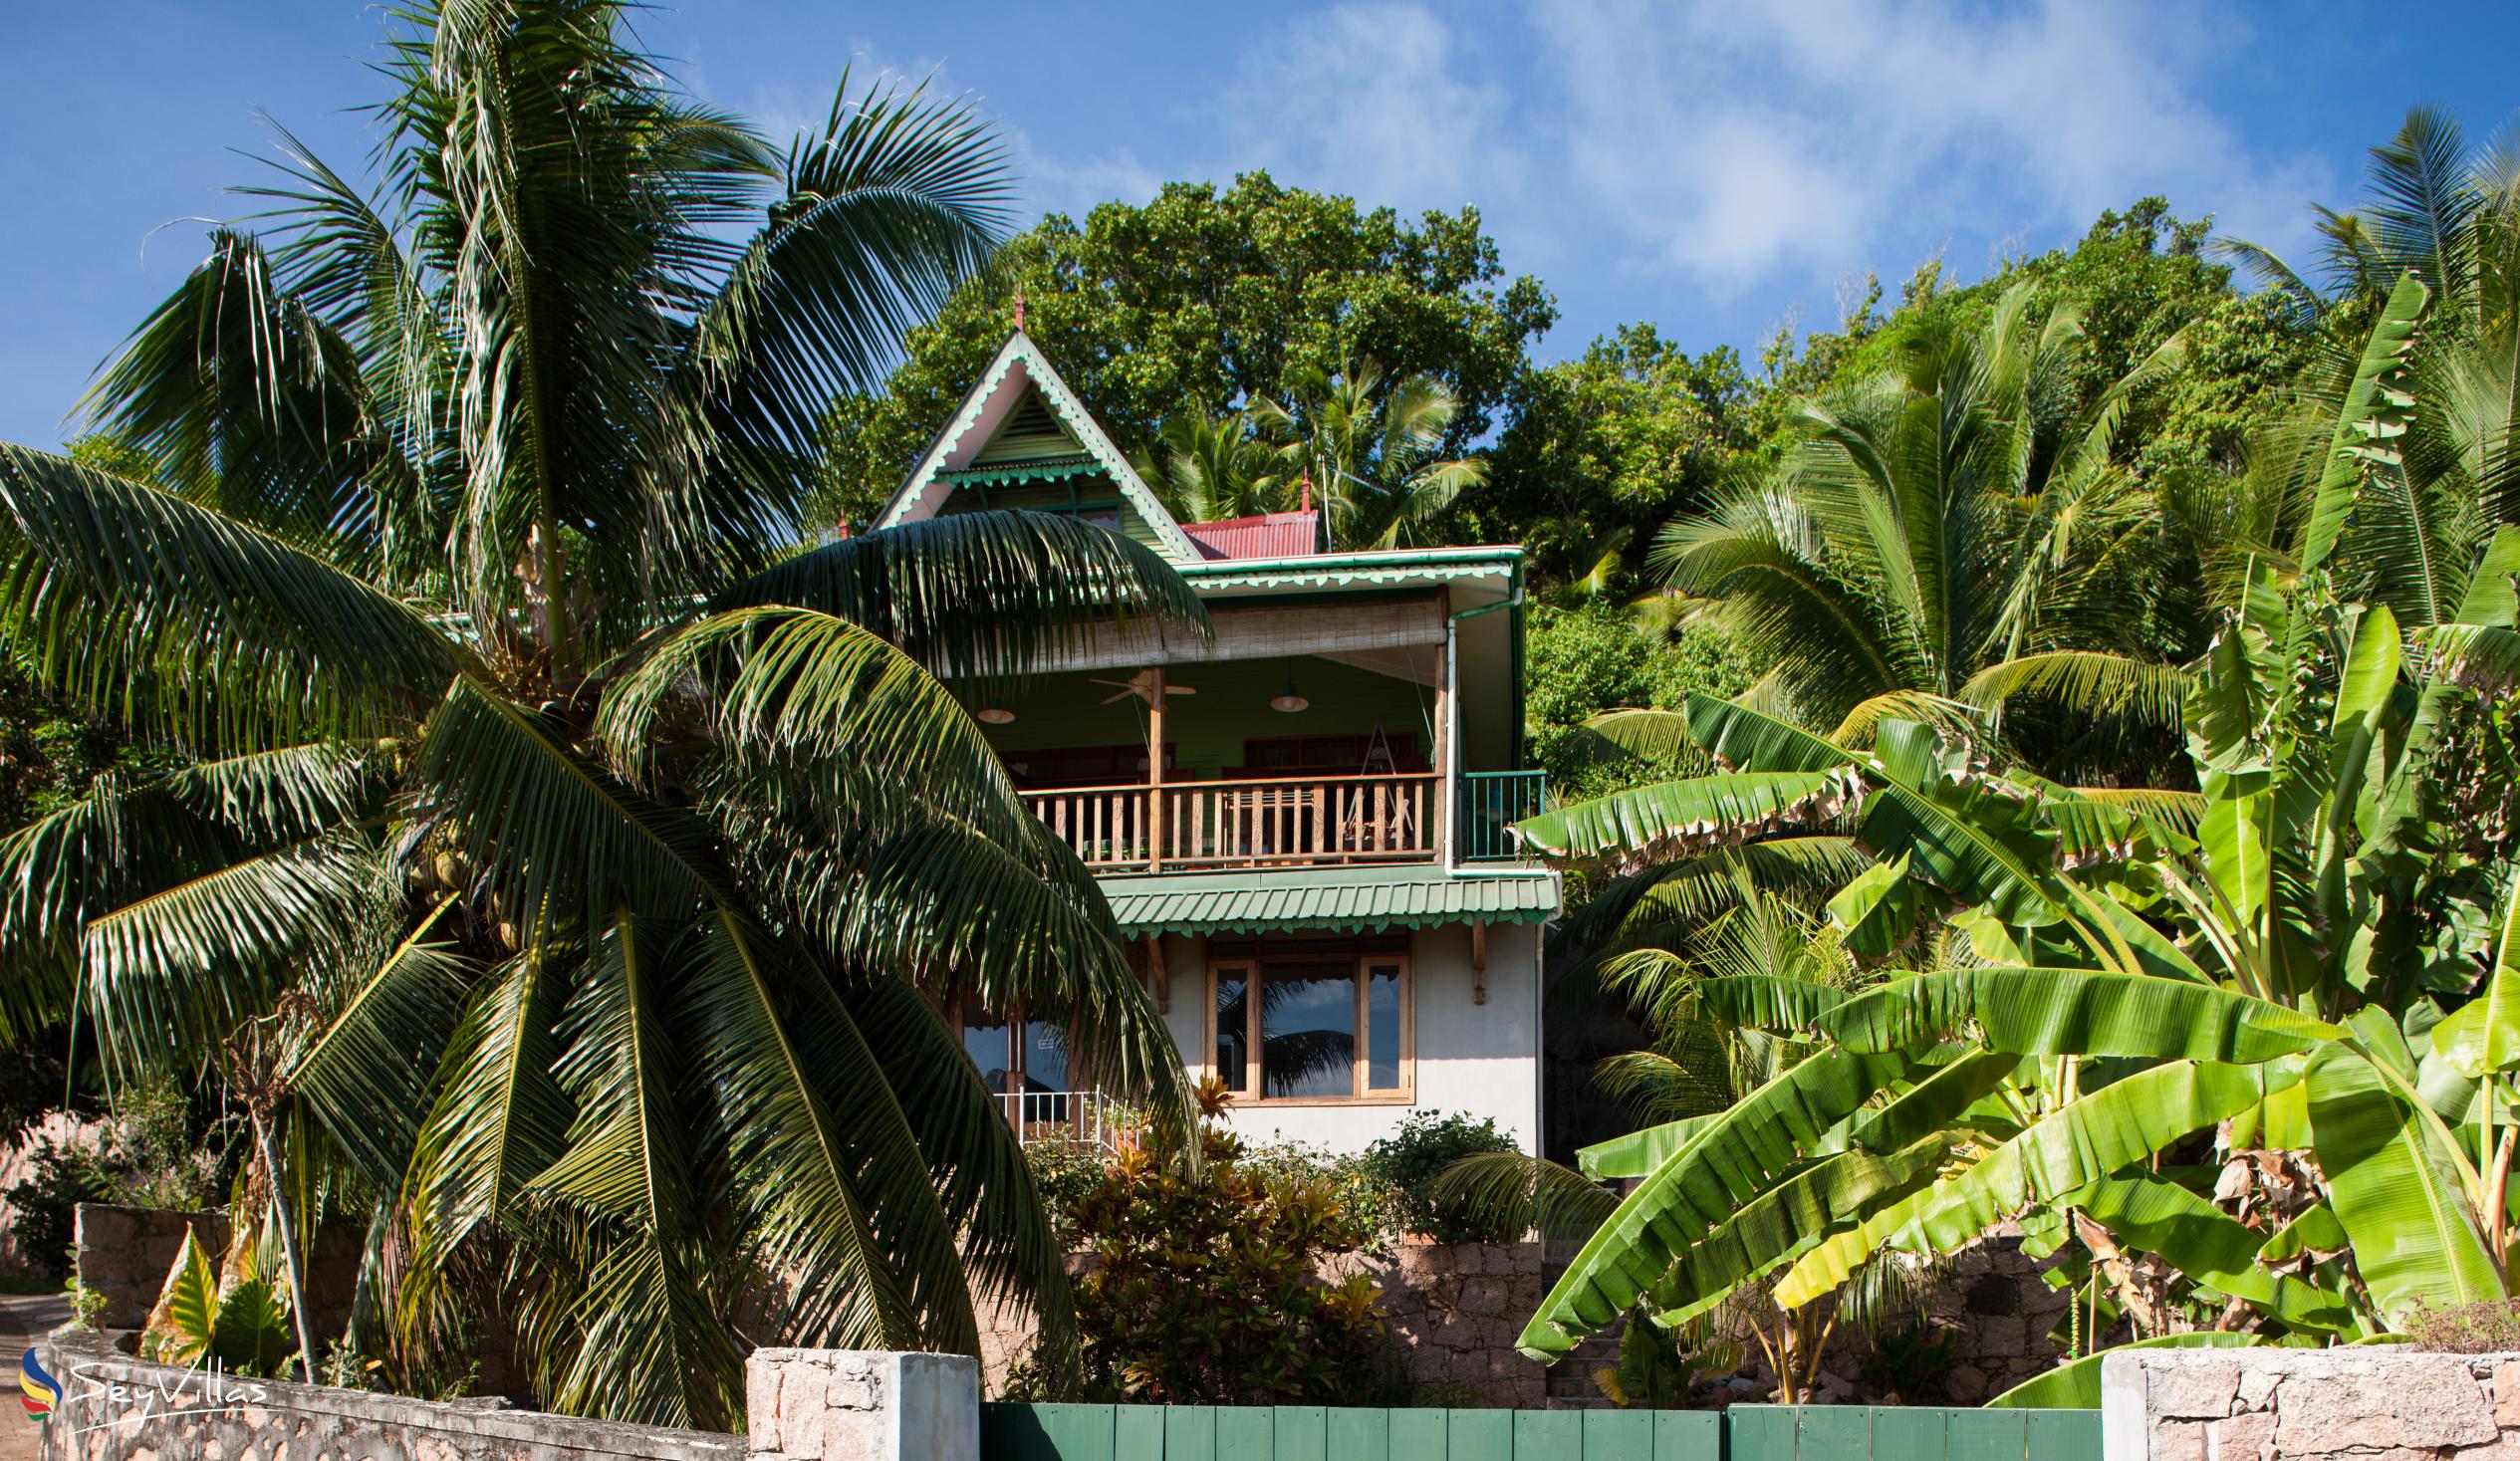 Foto 6: Villa Verte - Aussenbereich - La Digue (Seychellen)